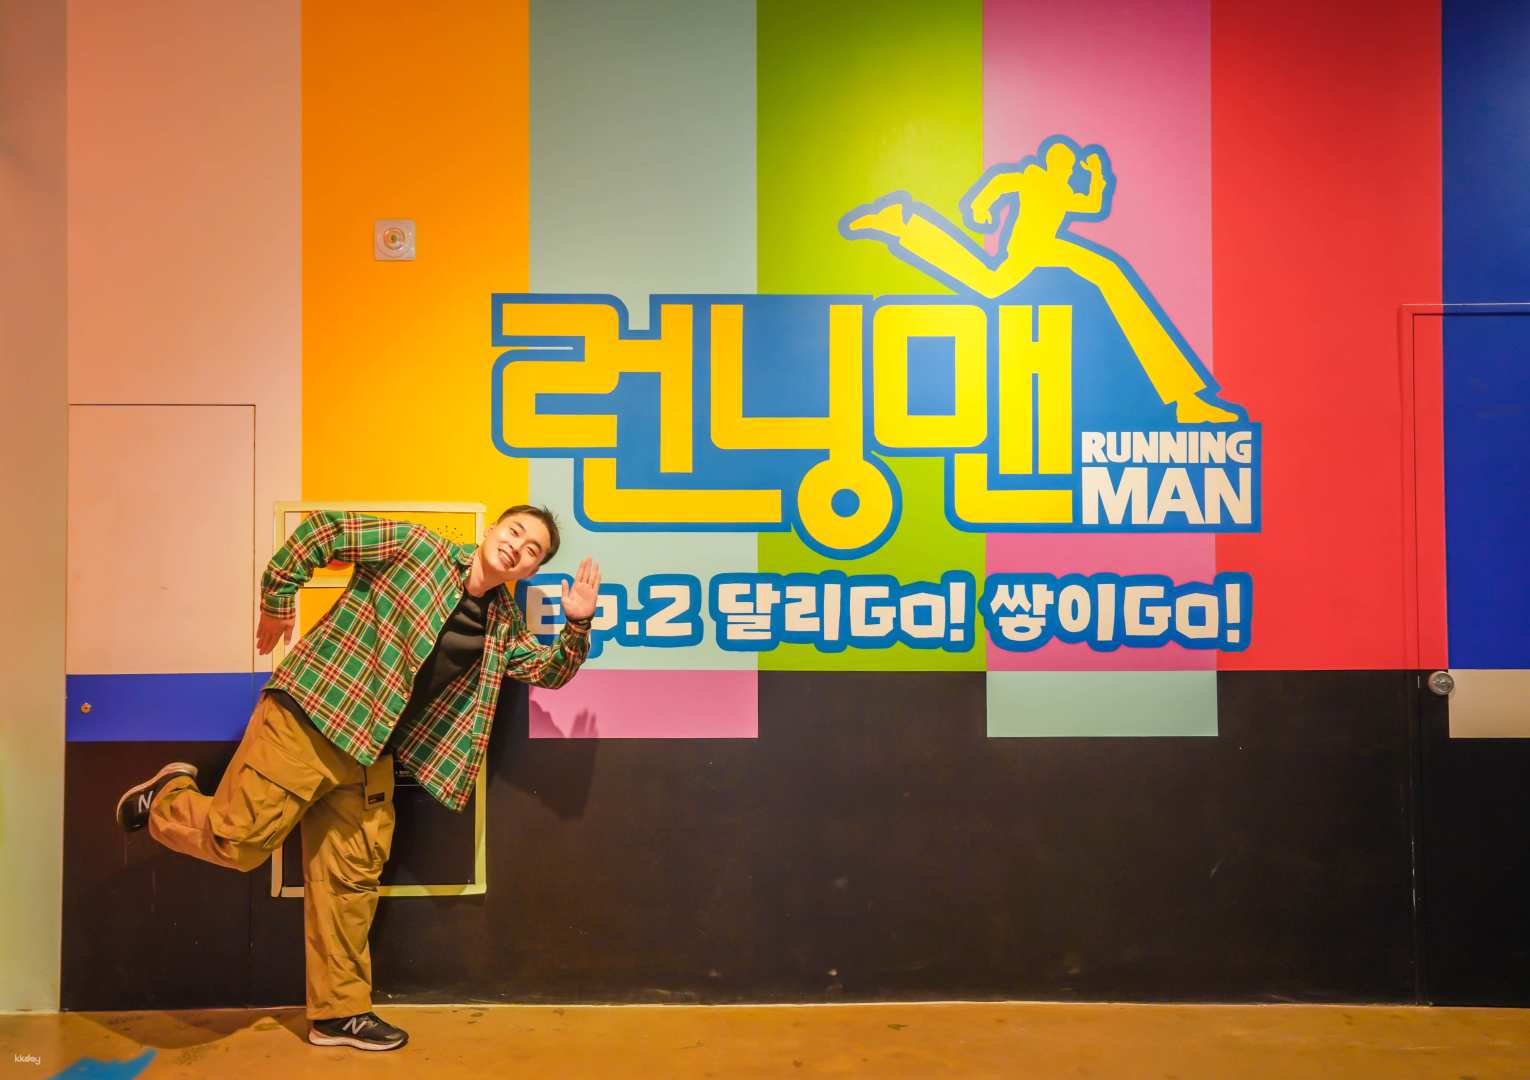 韓國-釜山Running Man體驗館&米田共和國(便便樂園) 門票